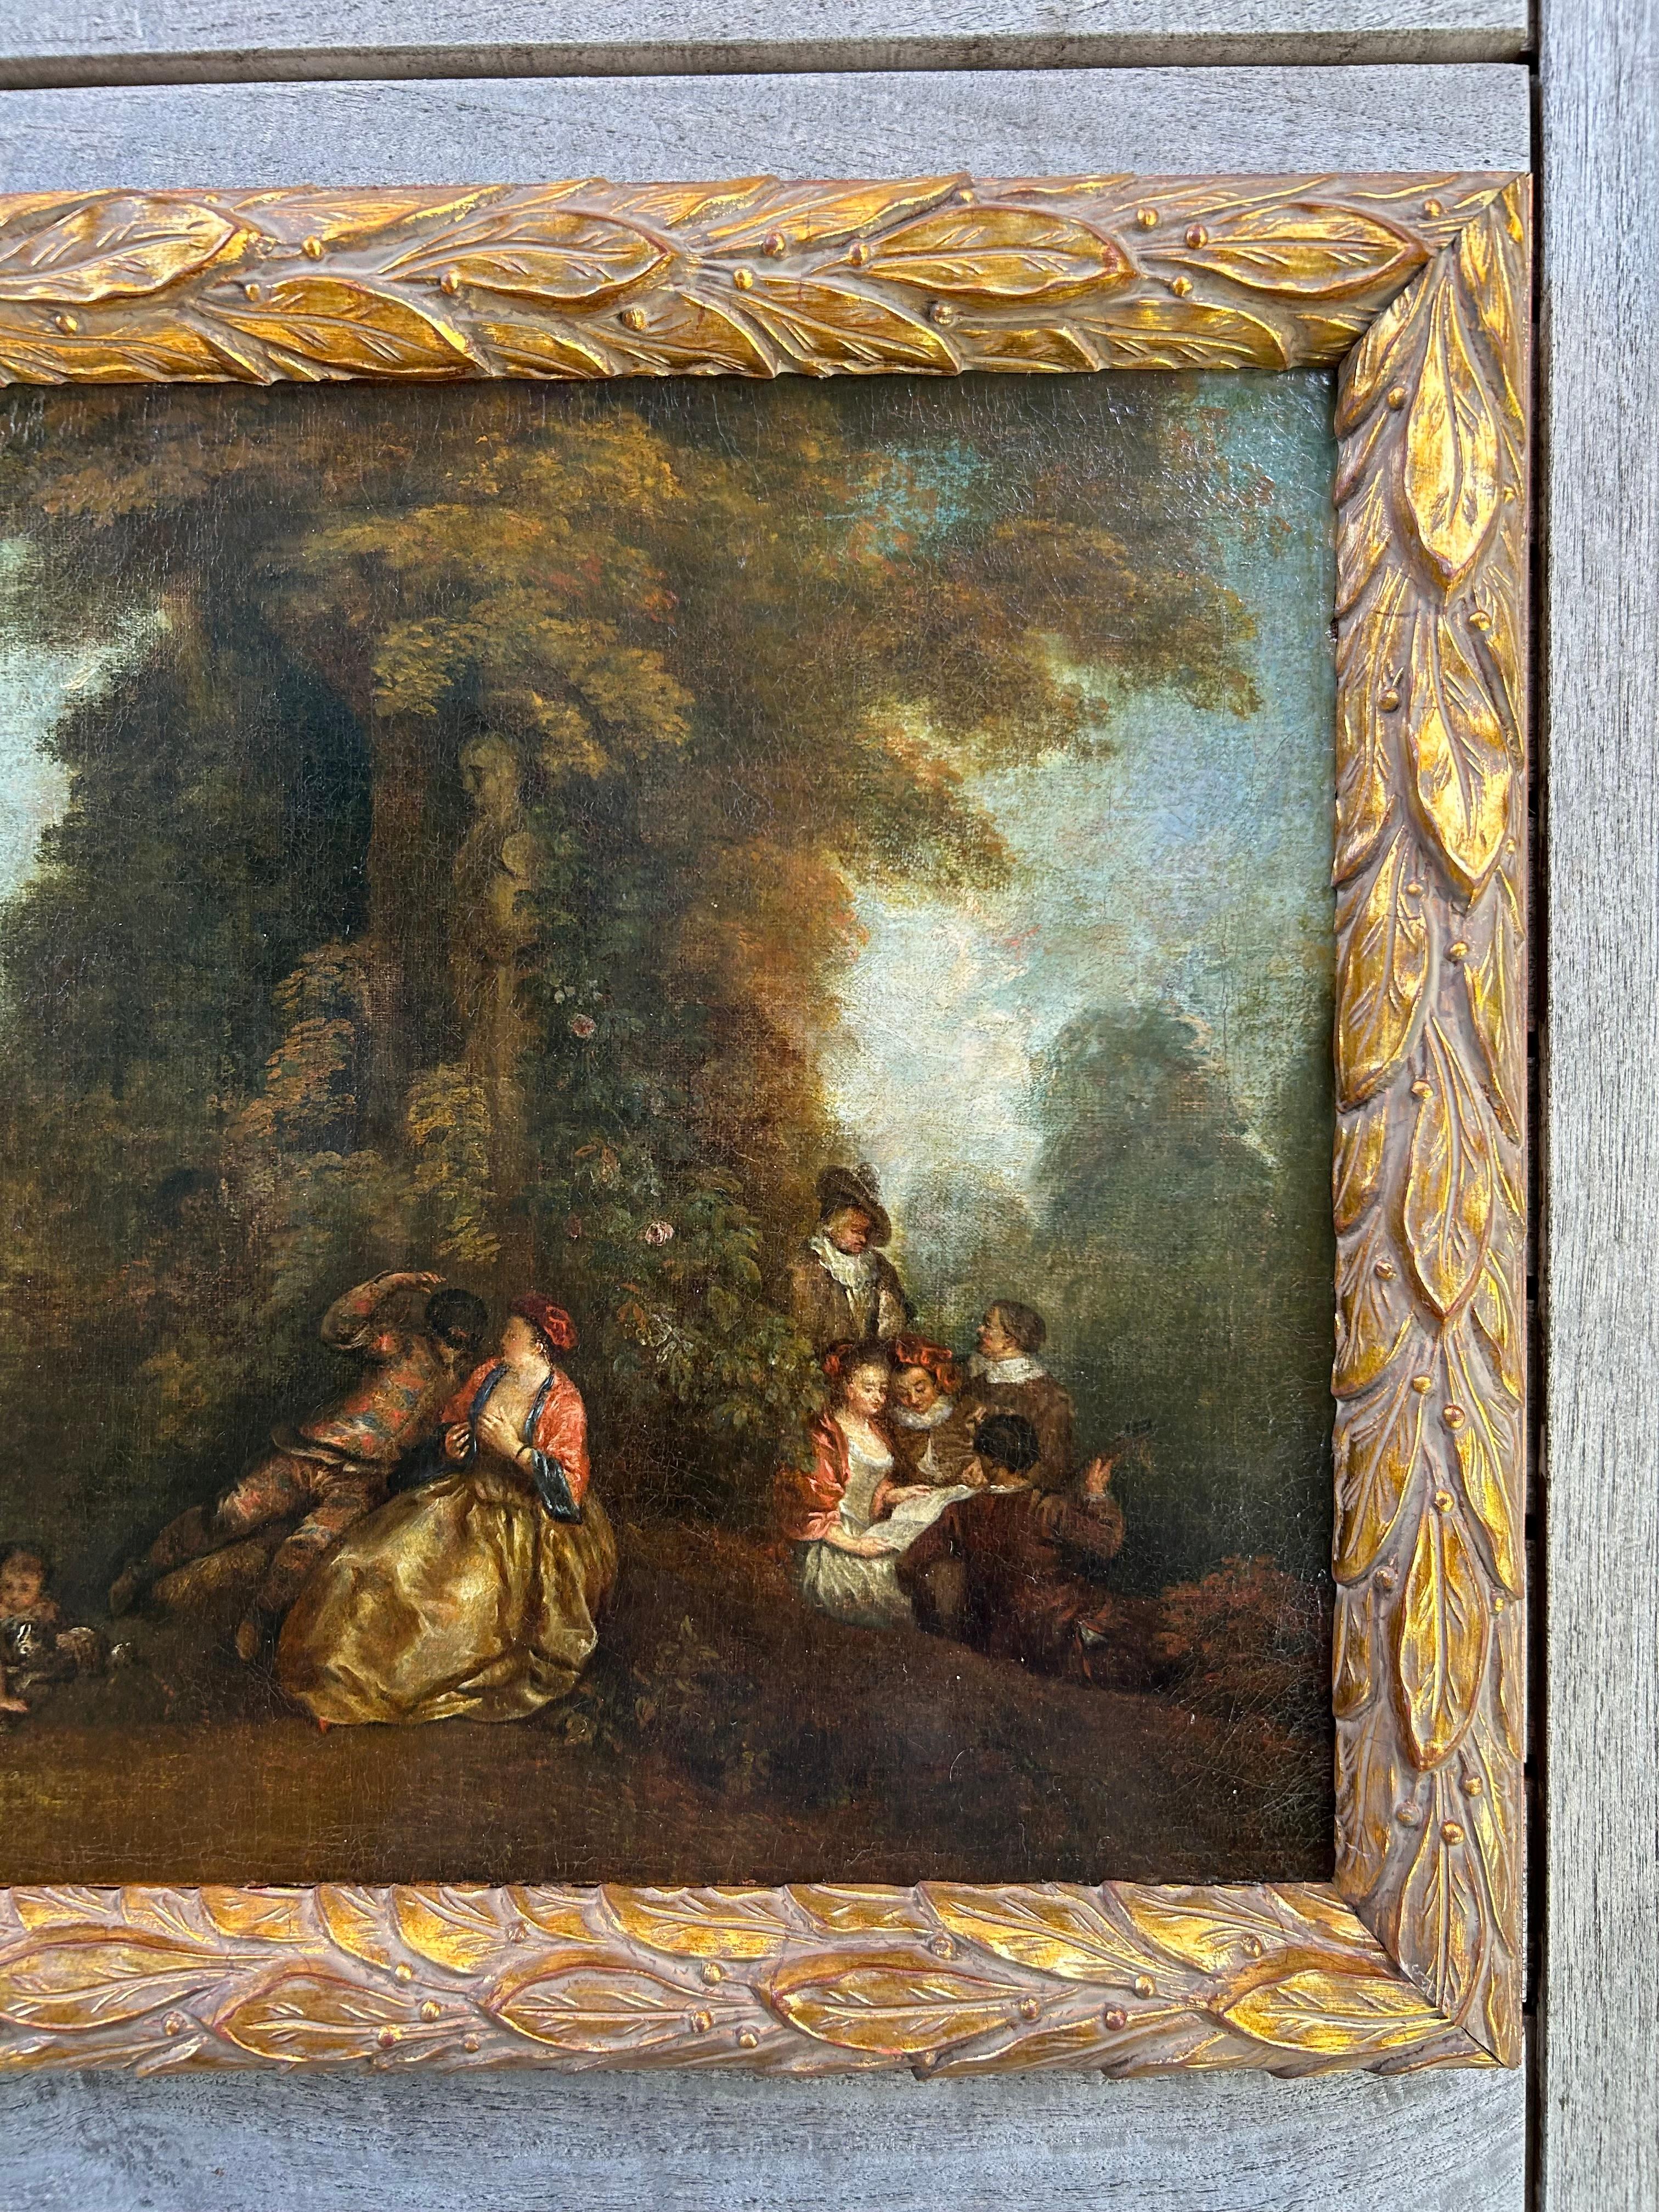 Une belle huile sur toile du XVIIIe siècle, représentant une scène de jardin typique de l'époque, ou 